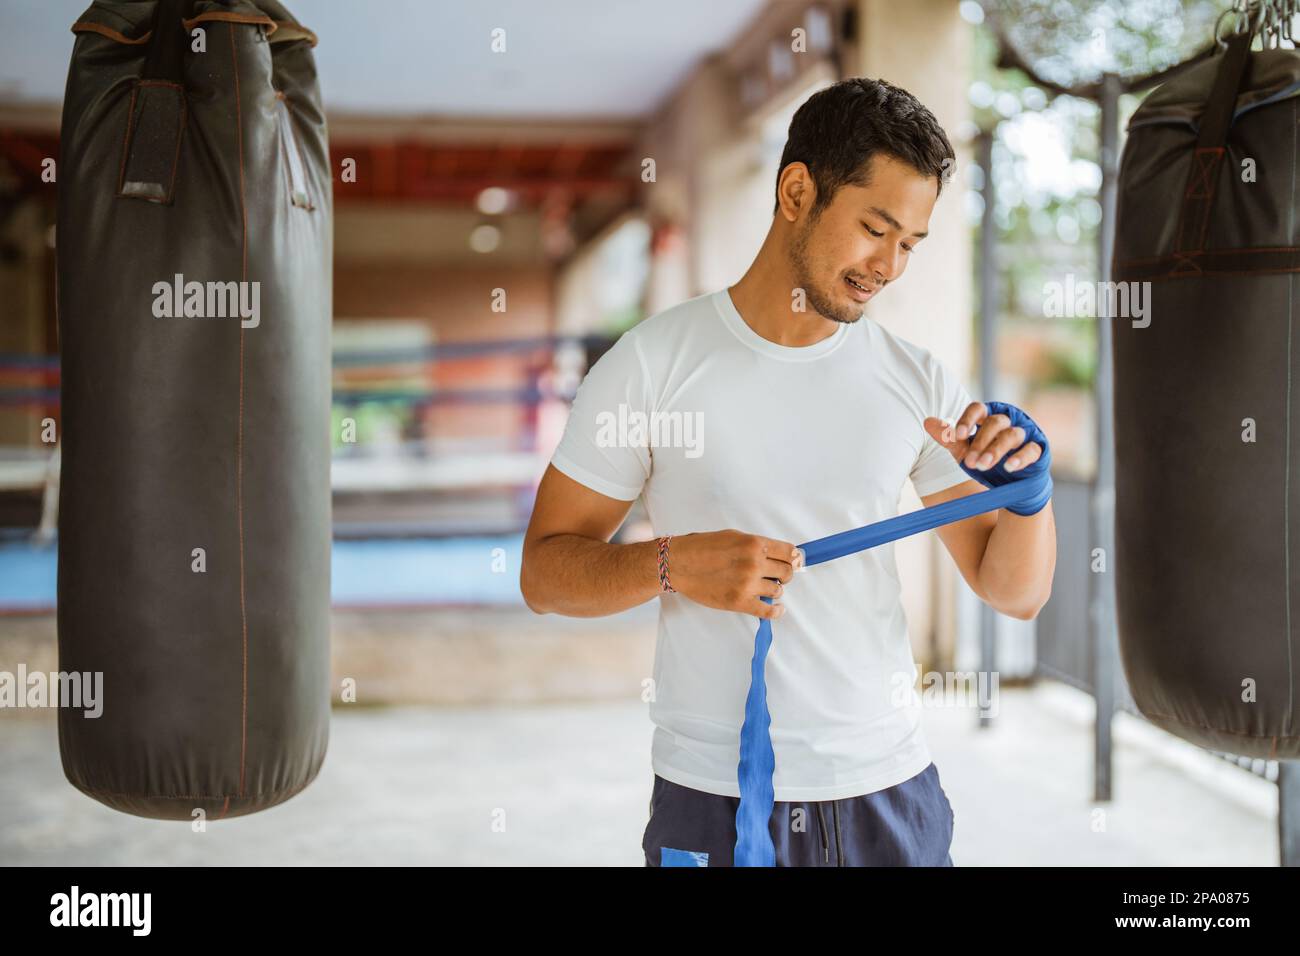 Ein asiatischer Boxer, der Boxhandschuhe trägt, während er im Ring steht Stockfoto